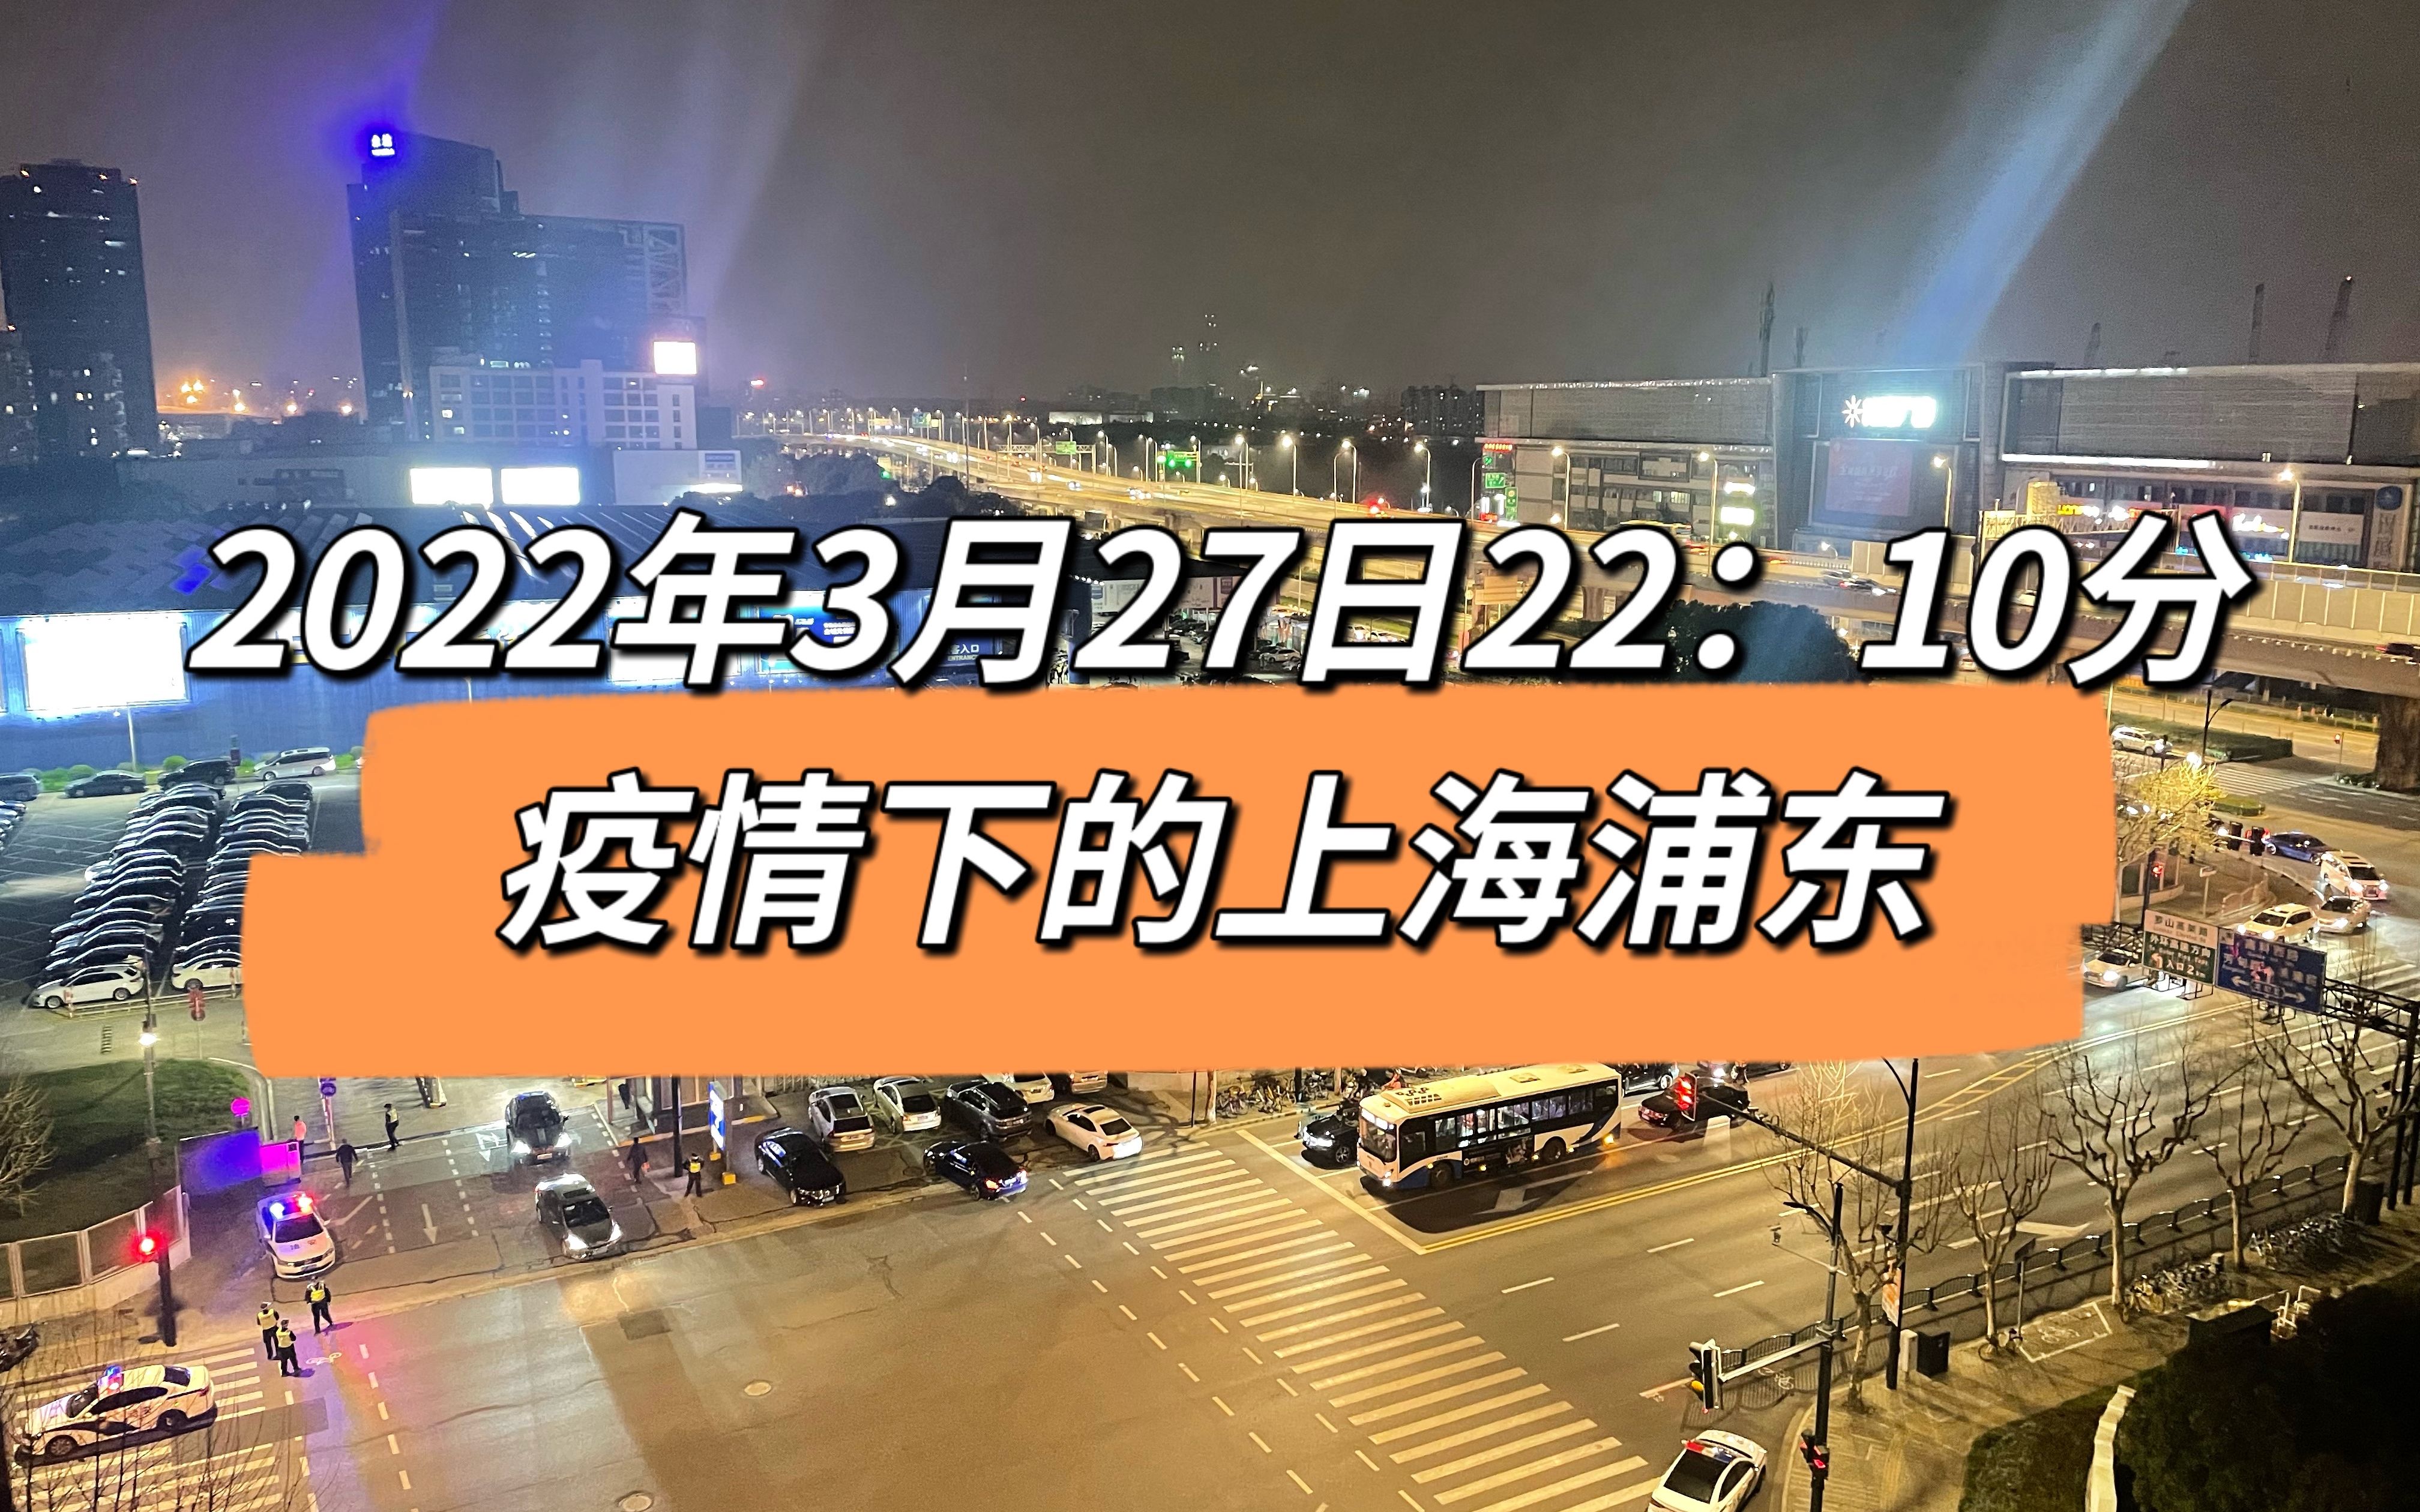 2022年3月27日上海发布公布后2210分疫情下的上海浦东麦德龙抢购排队